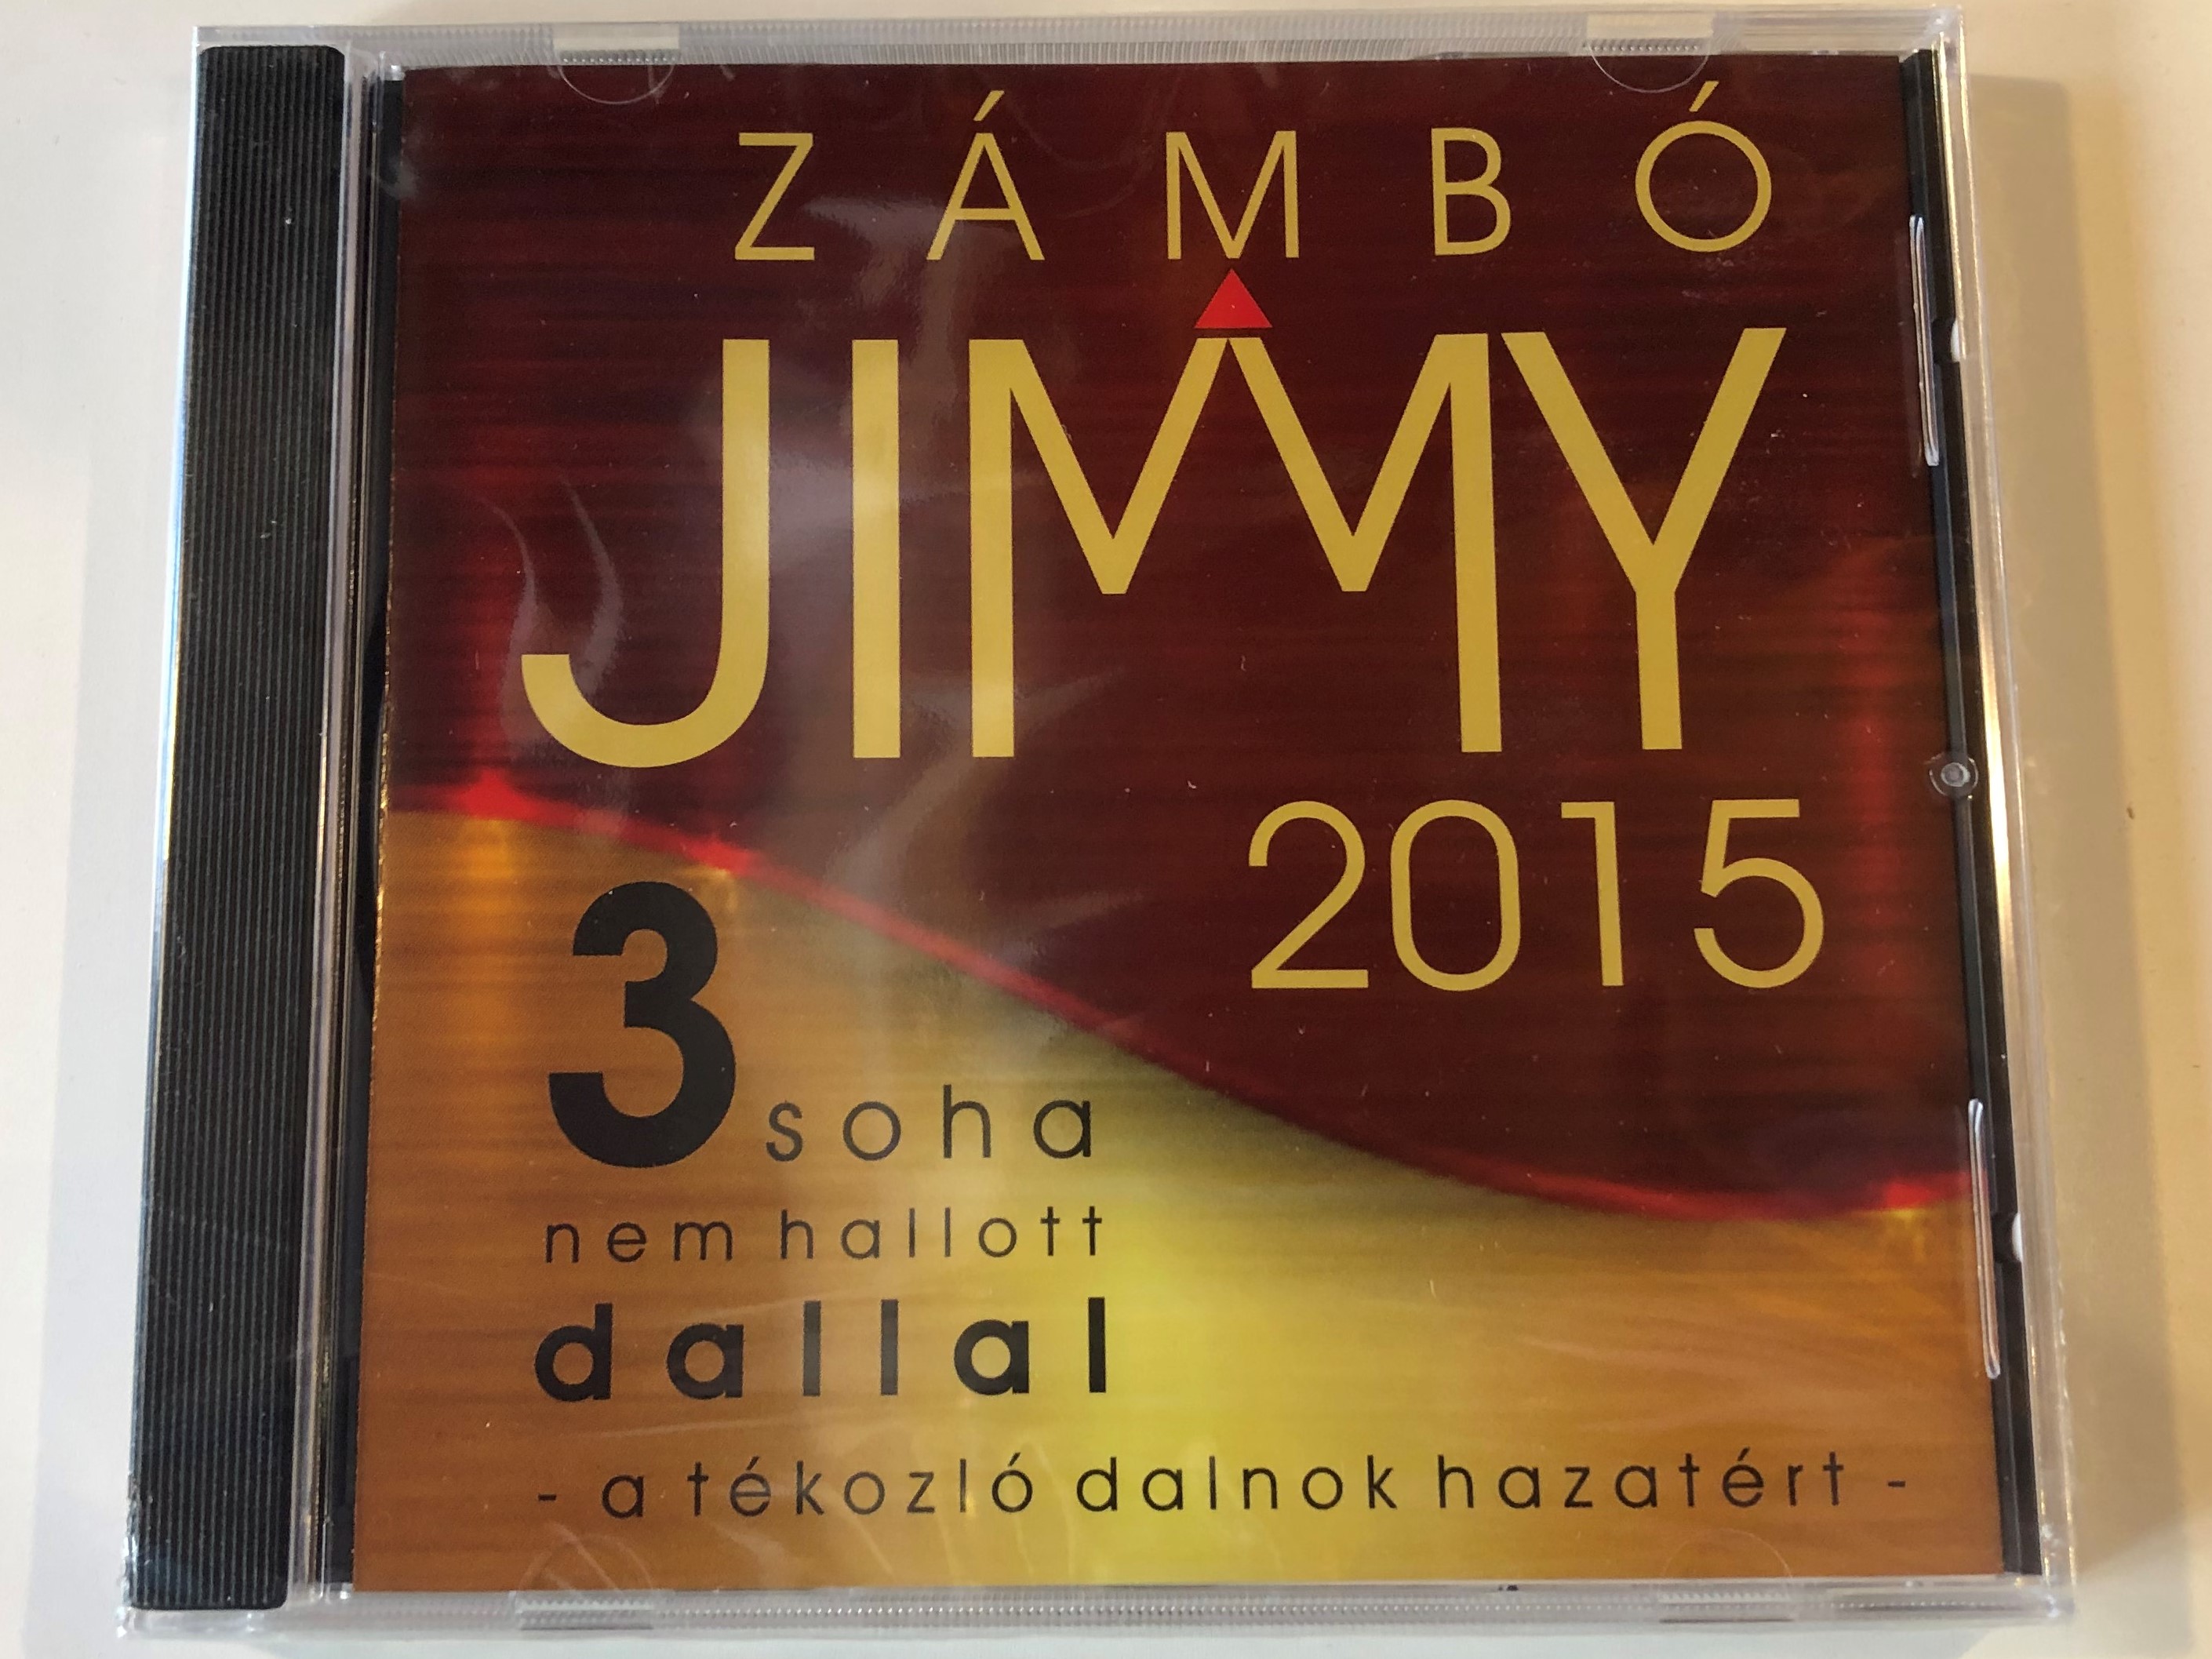 z-mb-jimmy-2015-3-soha-nem-hallott-dallal-a-t-kozl-dalnok-hazat-rt-dental-x-kft.-audio-cd-2015-d-001cd-1-.jpg